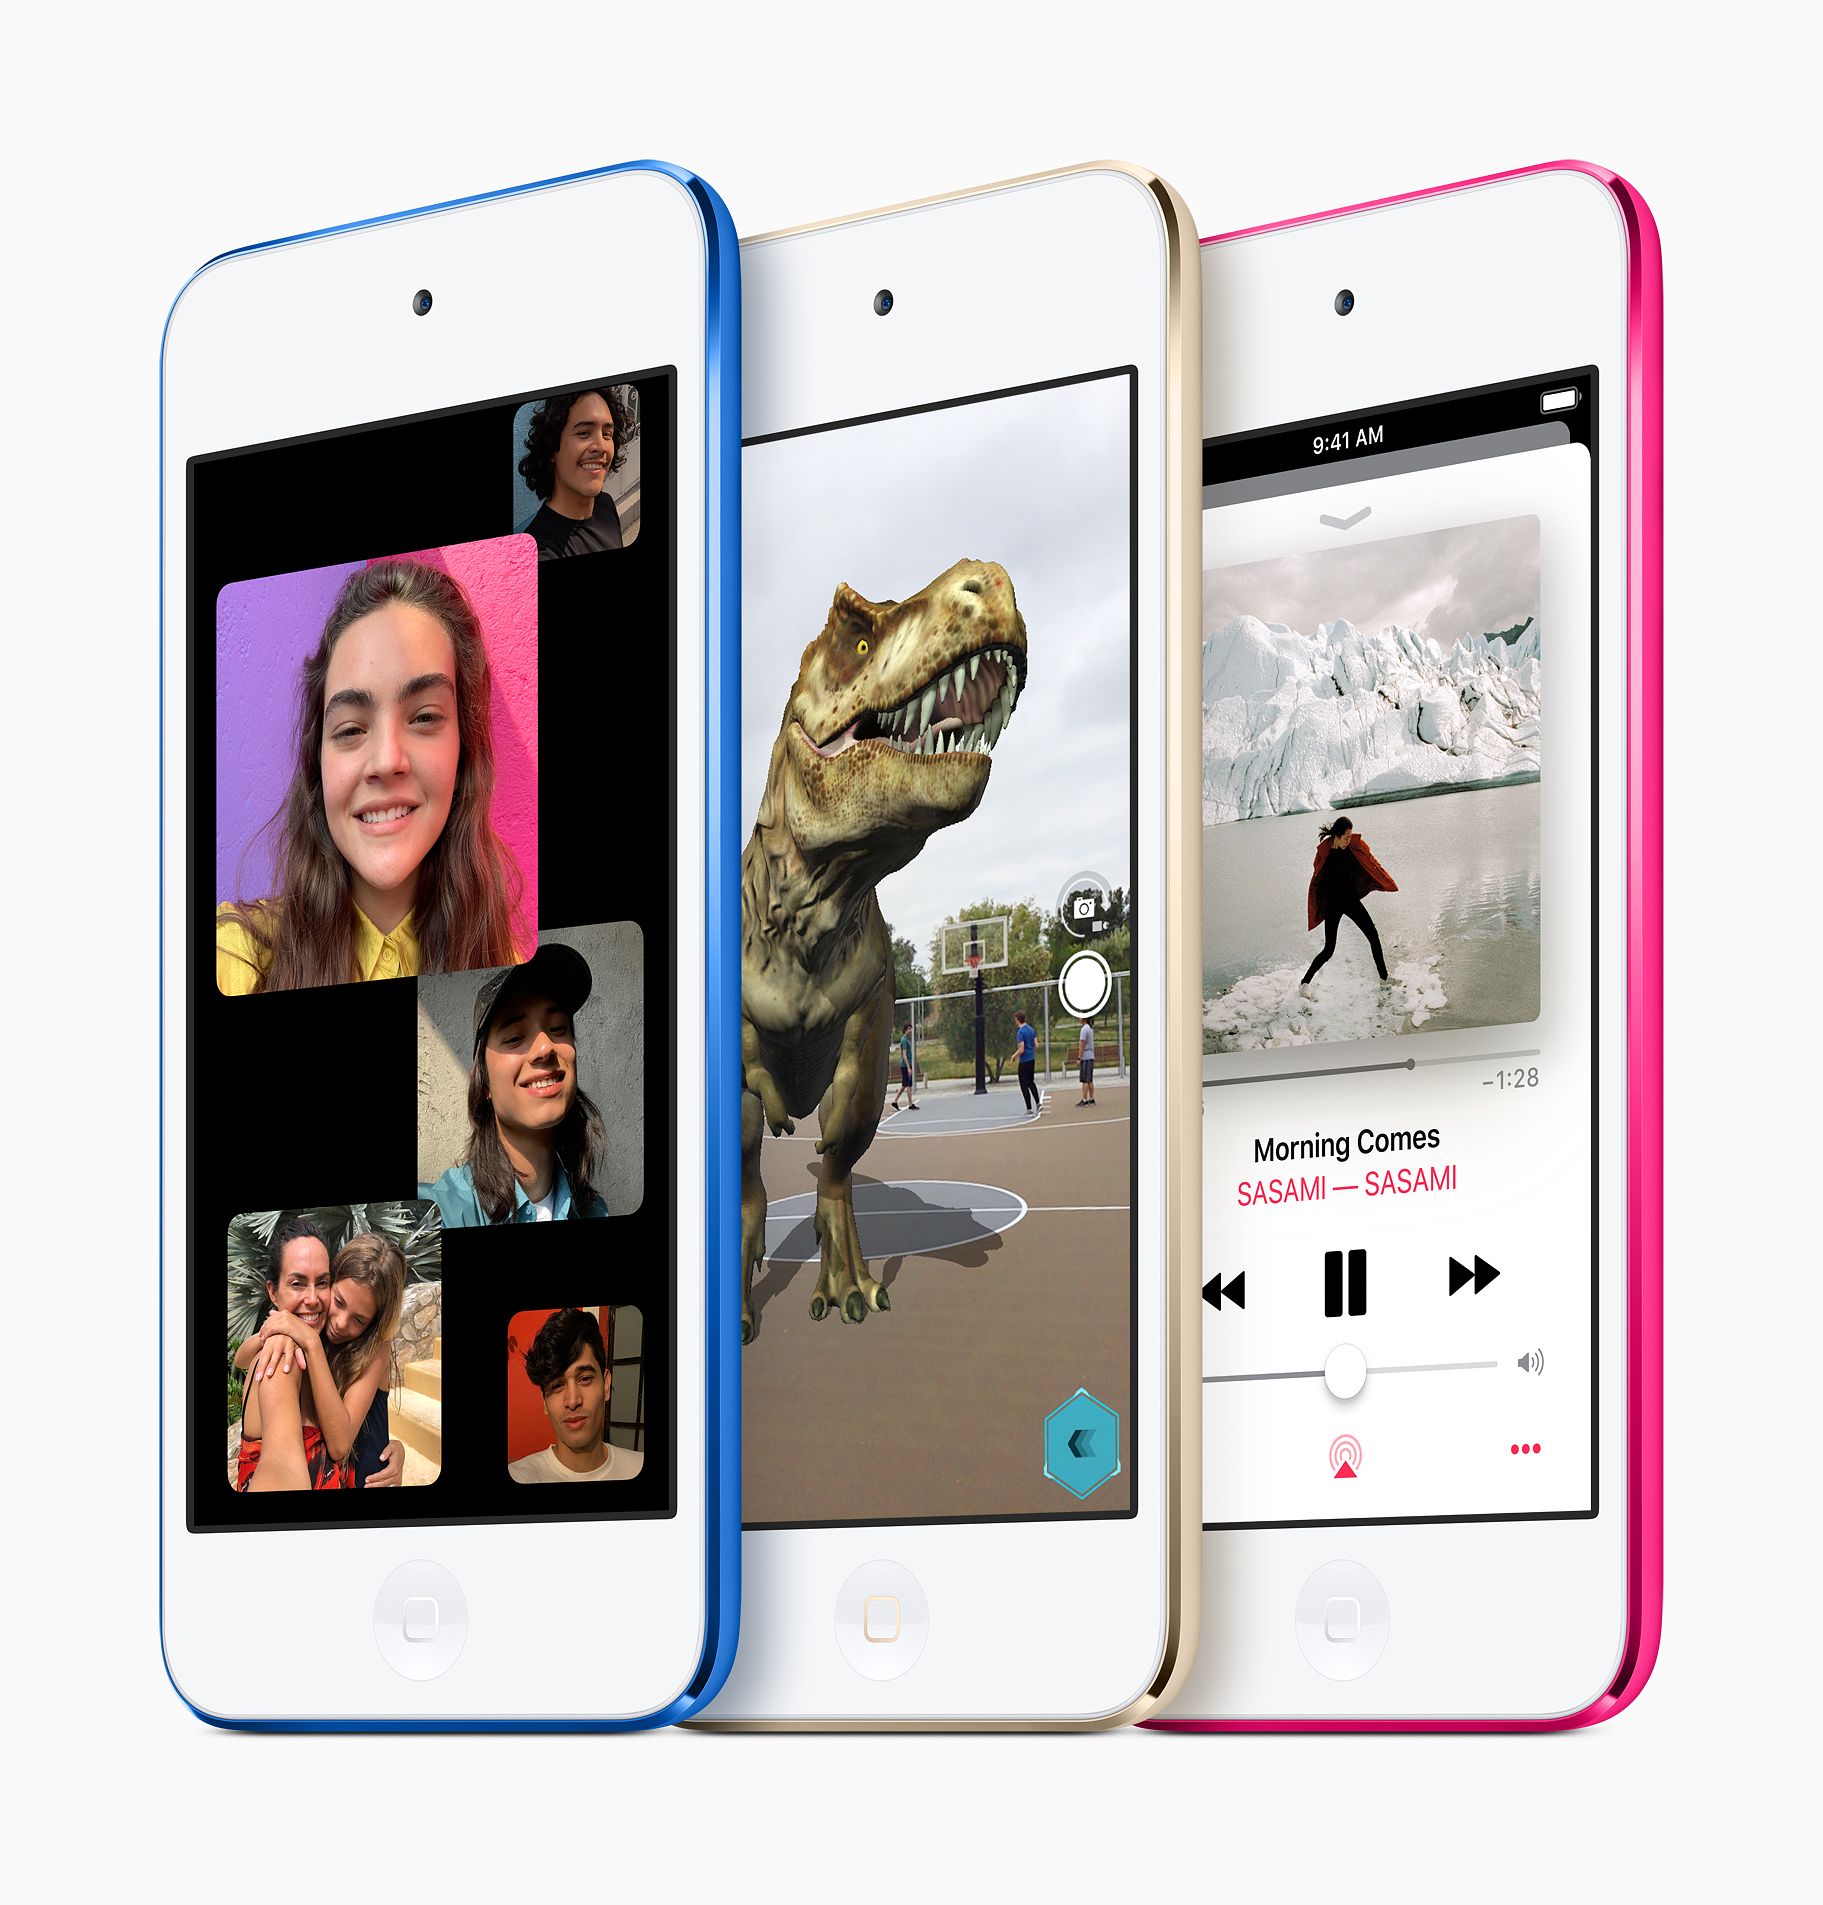 Ryhmä-FaceTime, lisätyn todellisuuden sovellukset sekä suurempi tallennusmuisti vaikkapa offline-tilaan tallennettavalle musiikille ovat uuden iPod touchin uudistuksia.